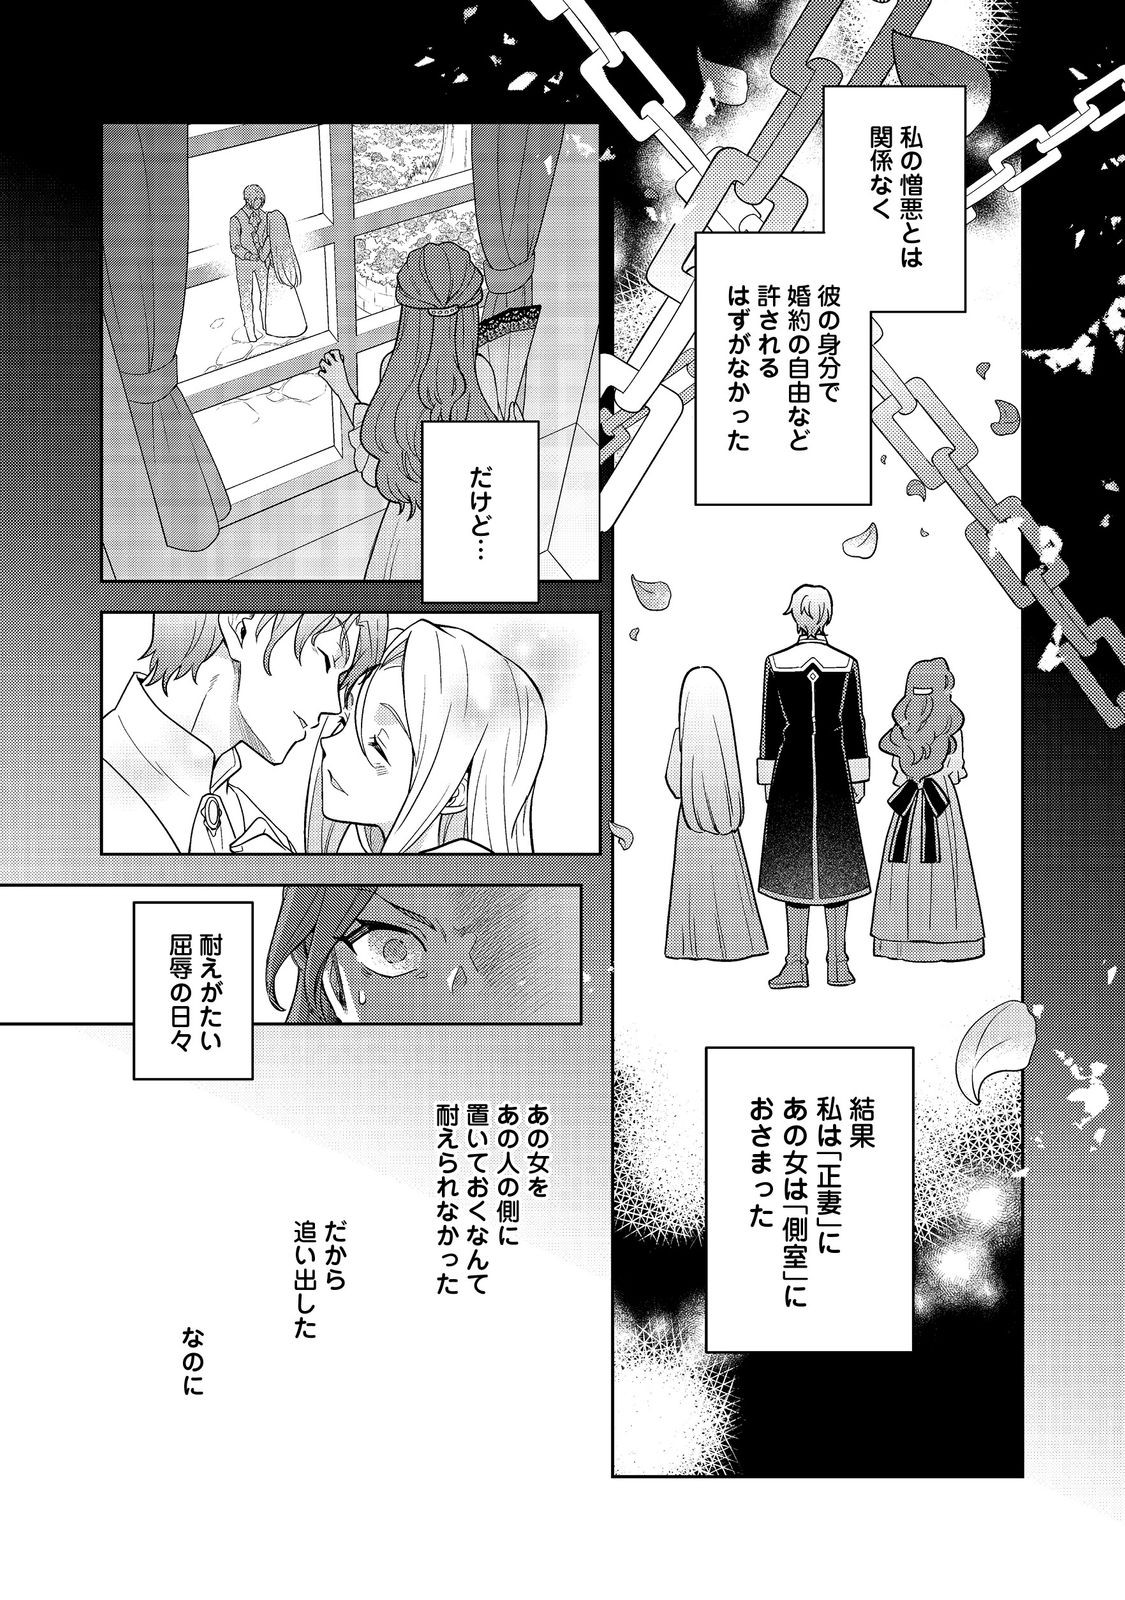 Mori no Hashikko no Chibi Majo-san - Chapter 2.1 - Page 18